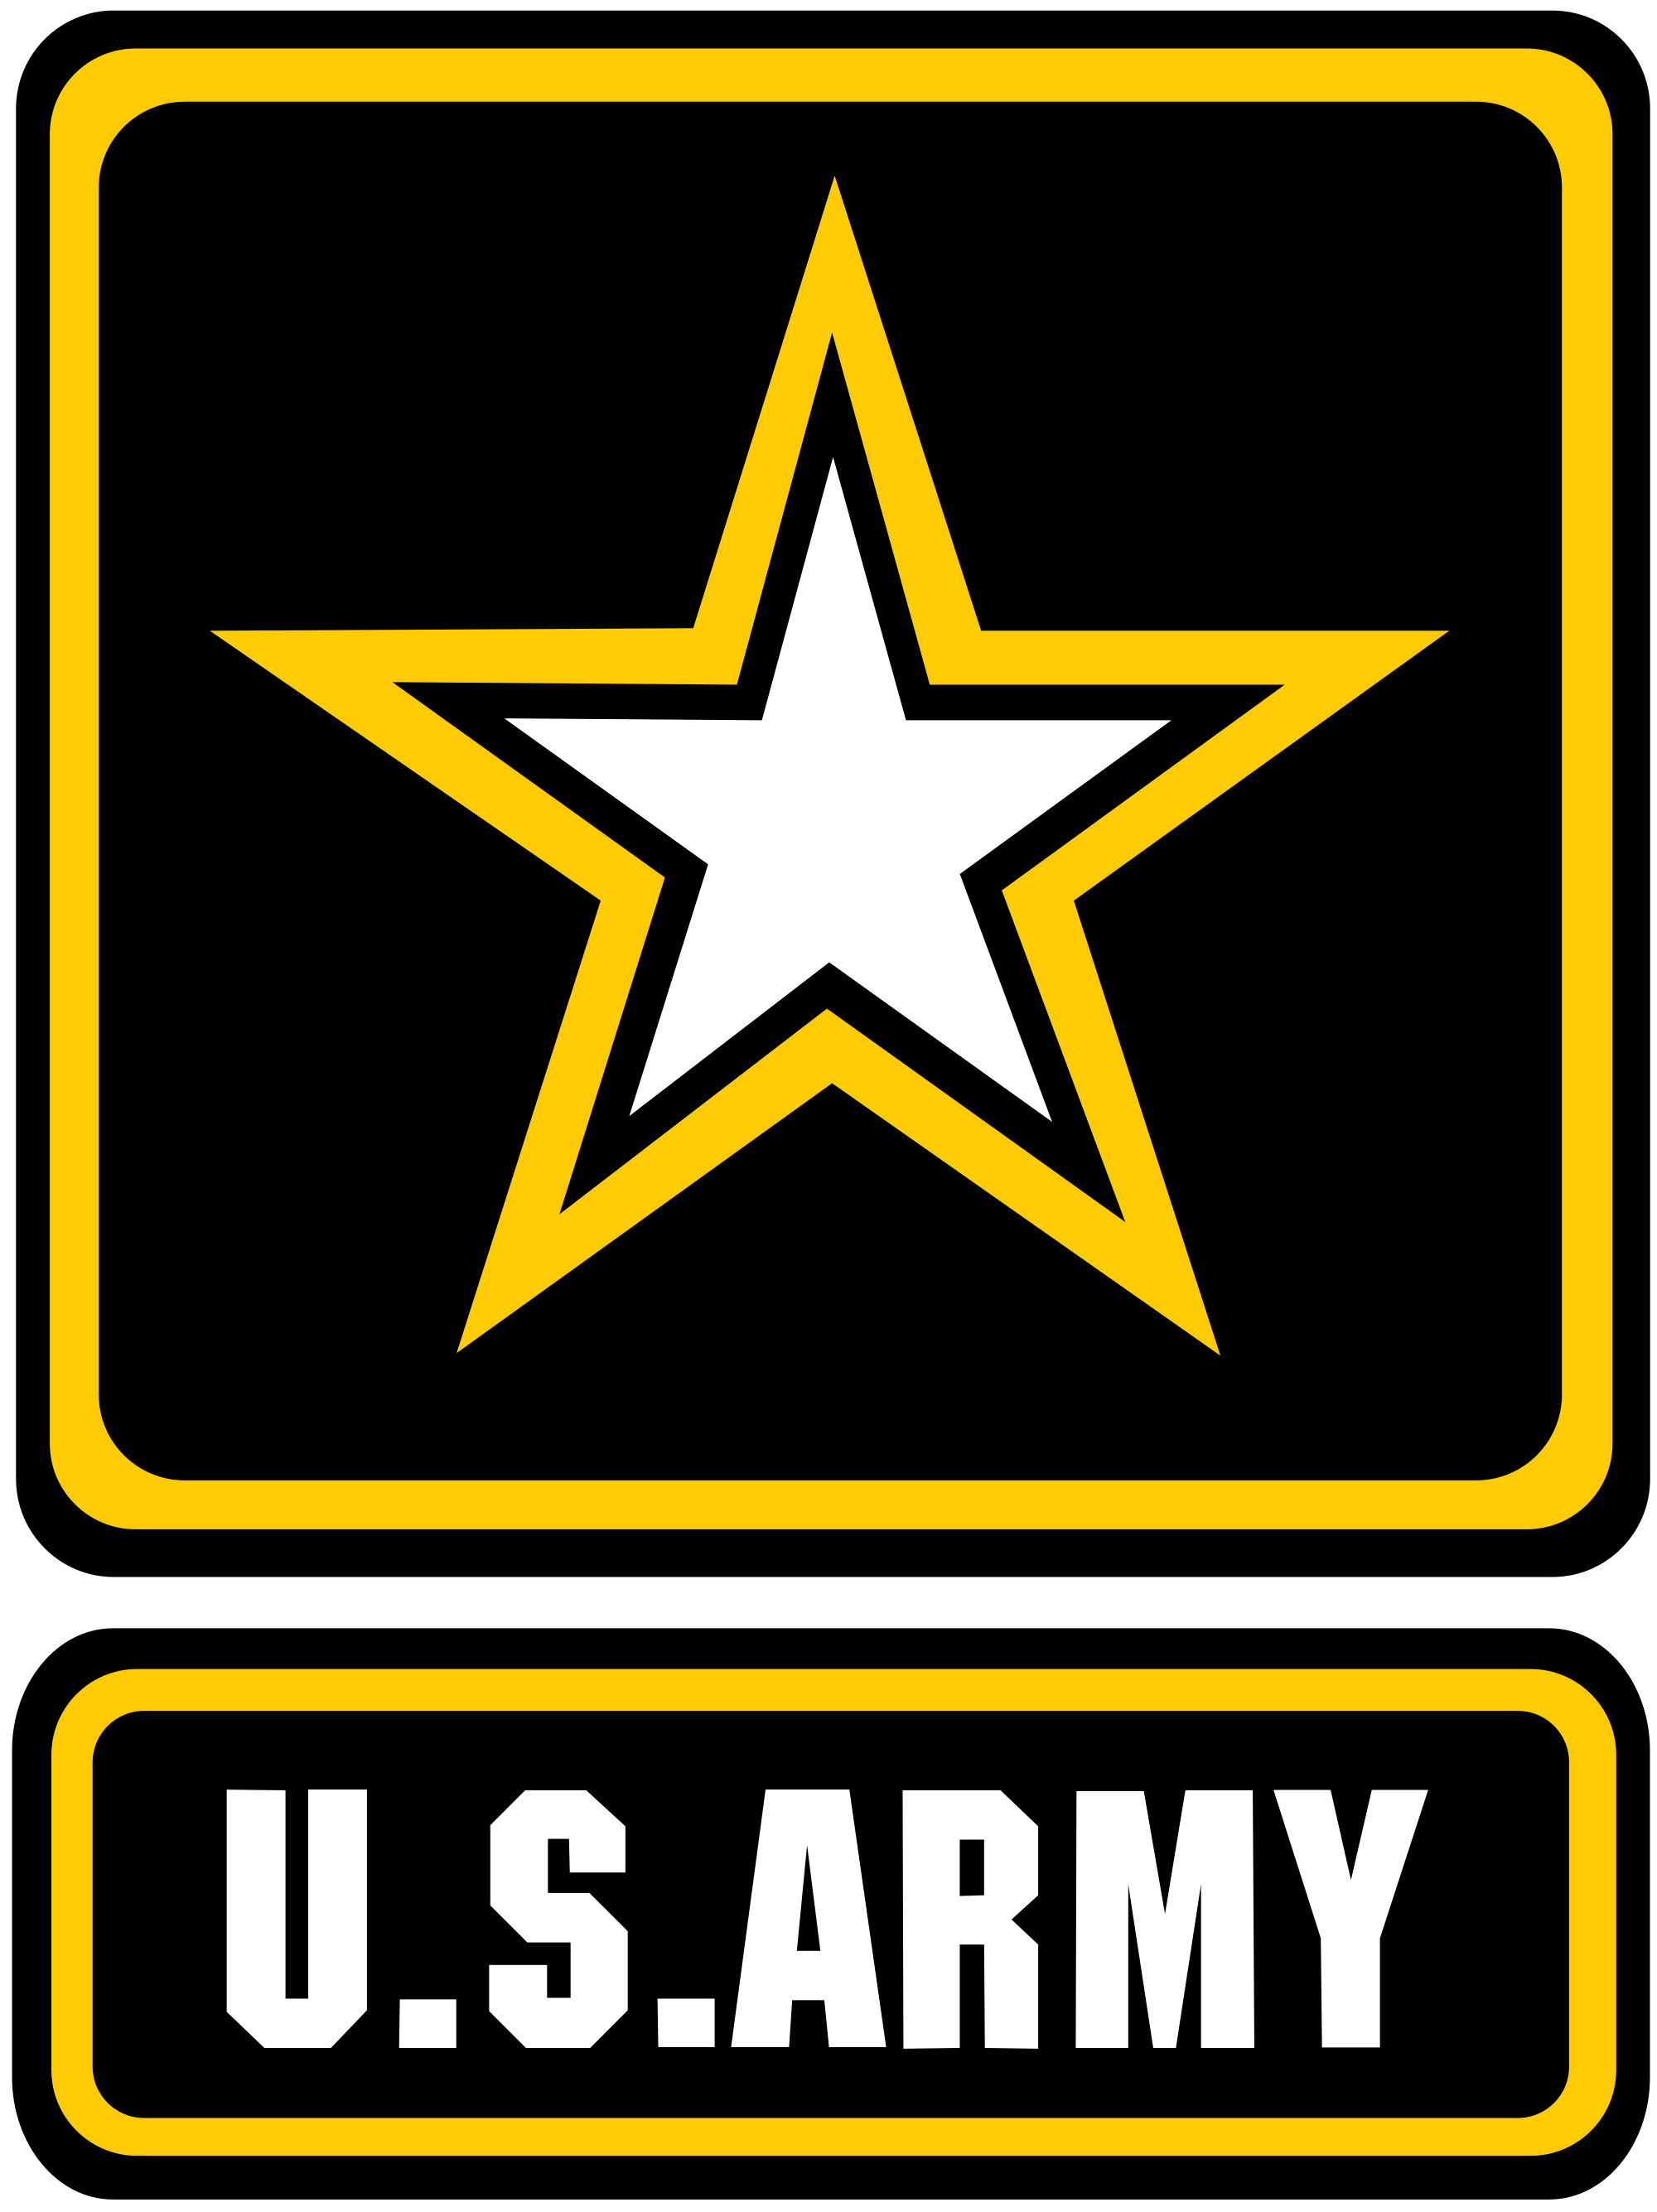 Army logo army.